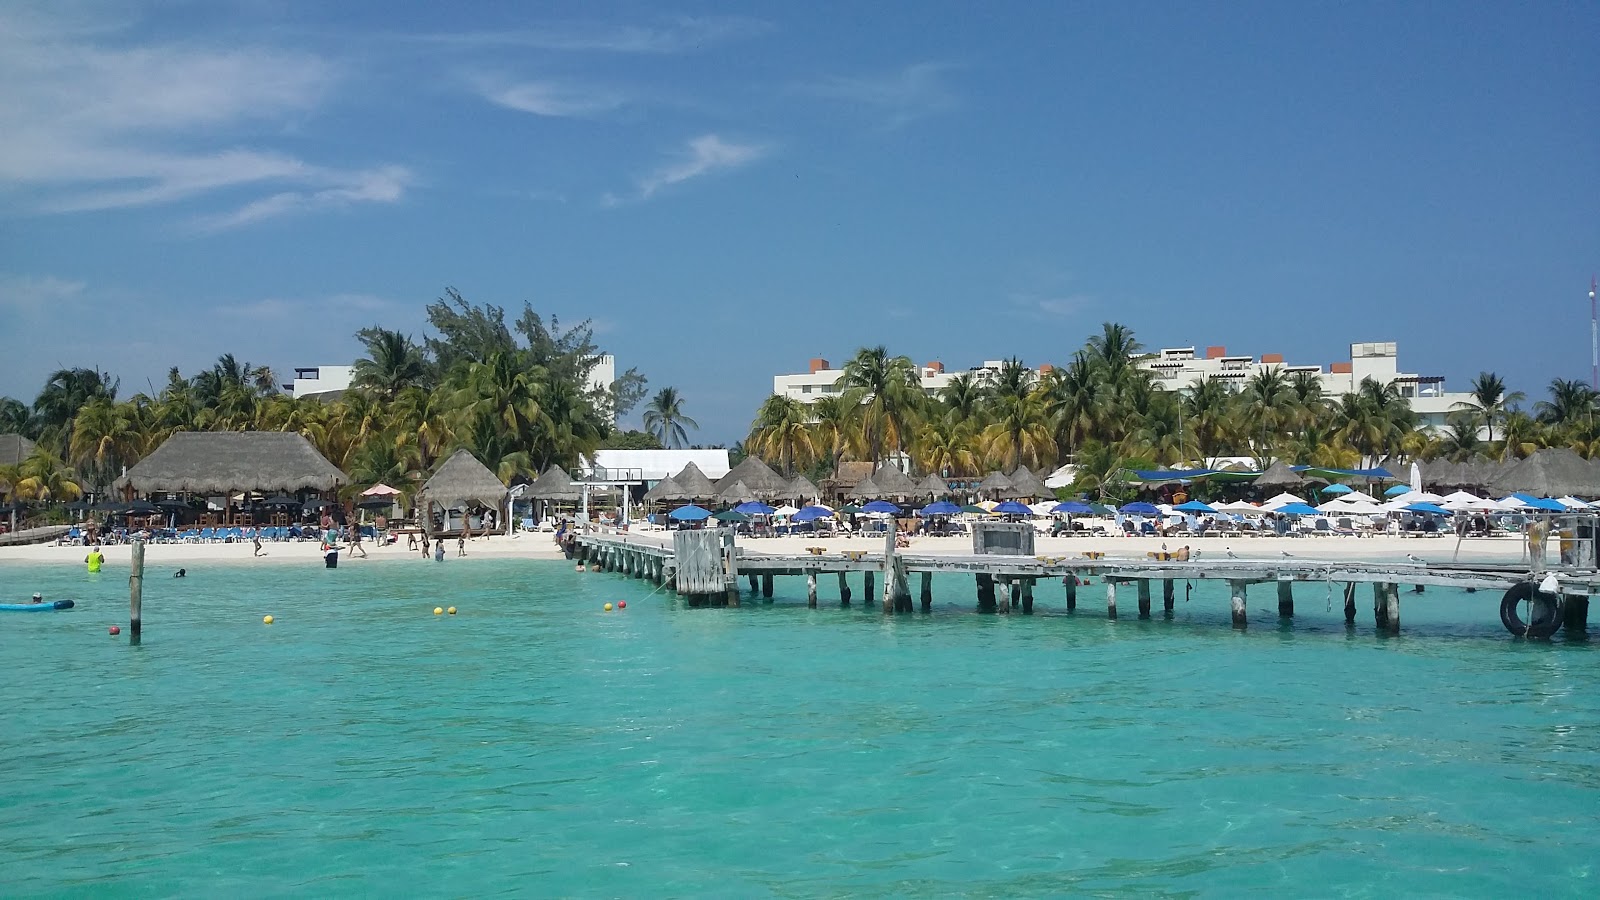 Foto af Playa Tortugas - populært sted blandt afslapningskendere